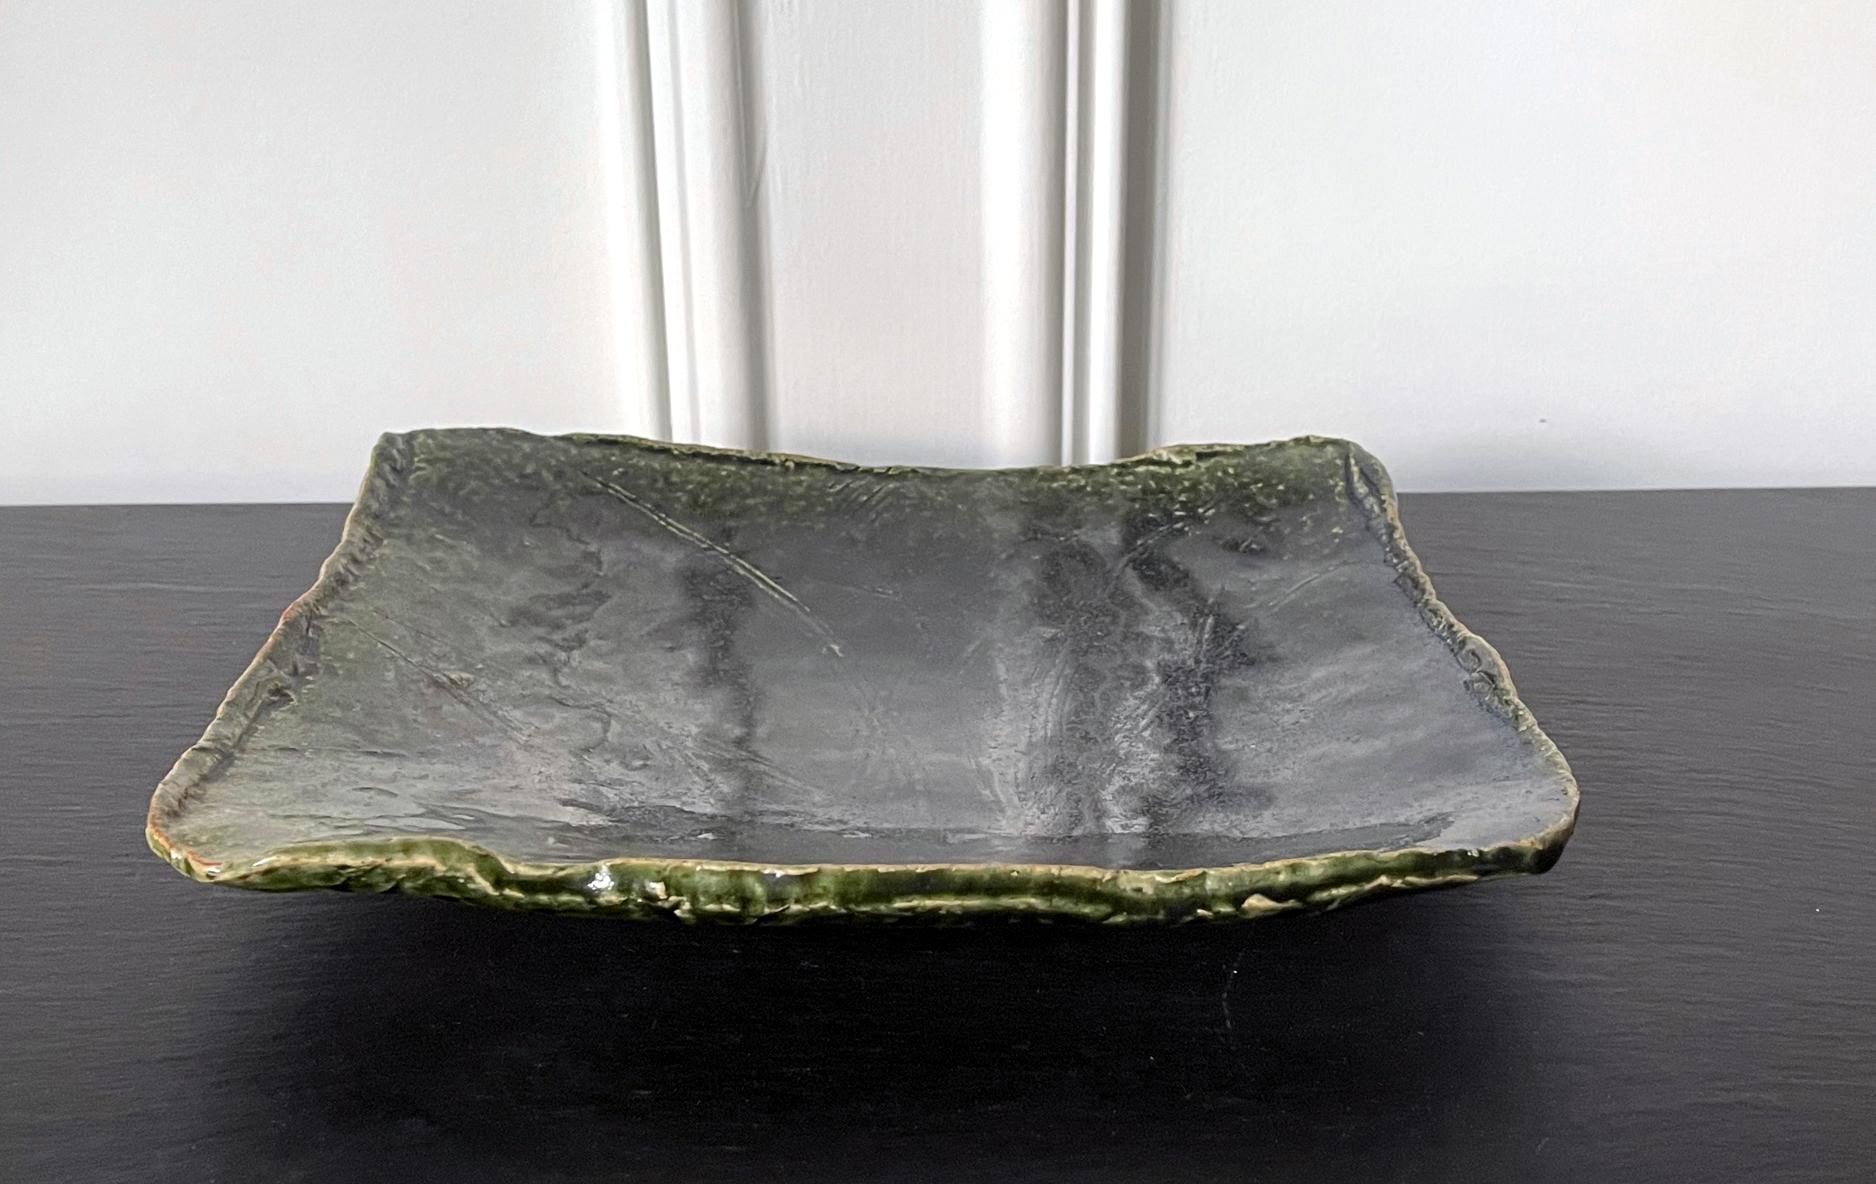 Un plat rectangulaire de style Oribe avec un corps en dalle légèrement concave et des bords irréguliers tournés vers le haut, fabriqué par Kitaoji Rosanjin (1883-1959) vers les années 1930-50. La surface du grès est incisée d'un motif de brins